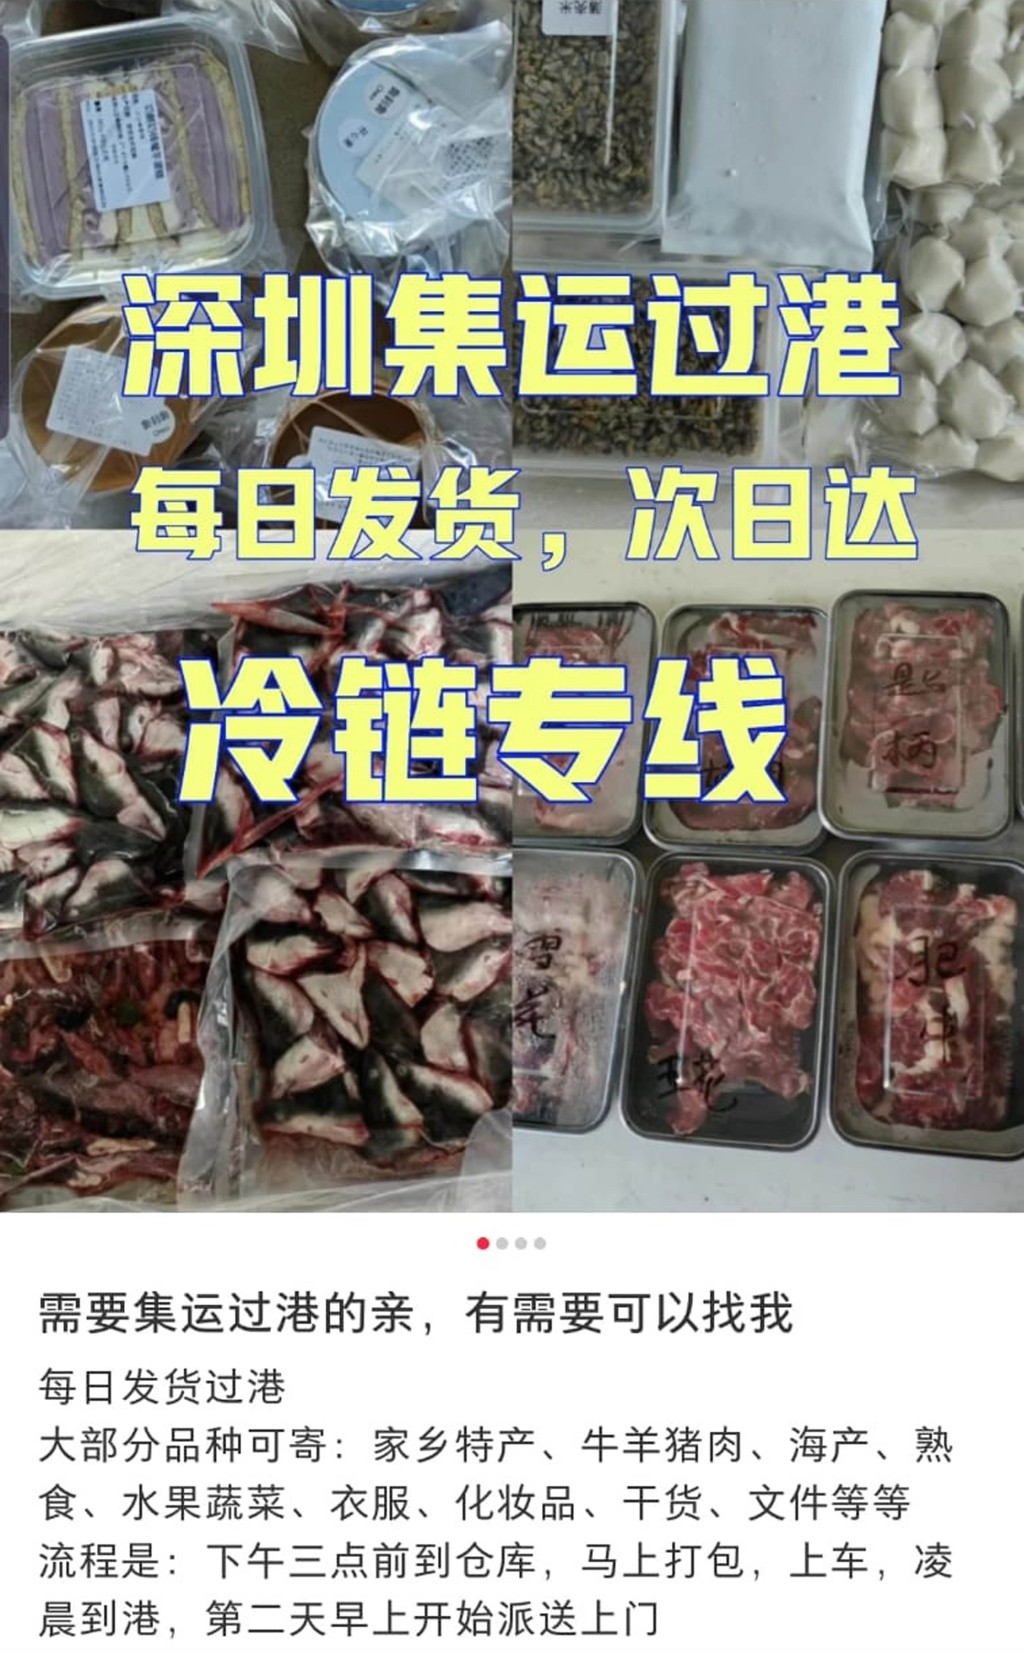 物流公司称可直送深圳串烧生肉到港客家中。 网上图片